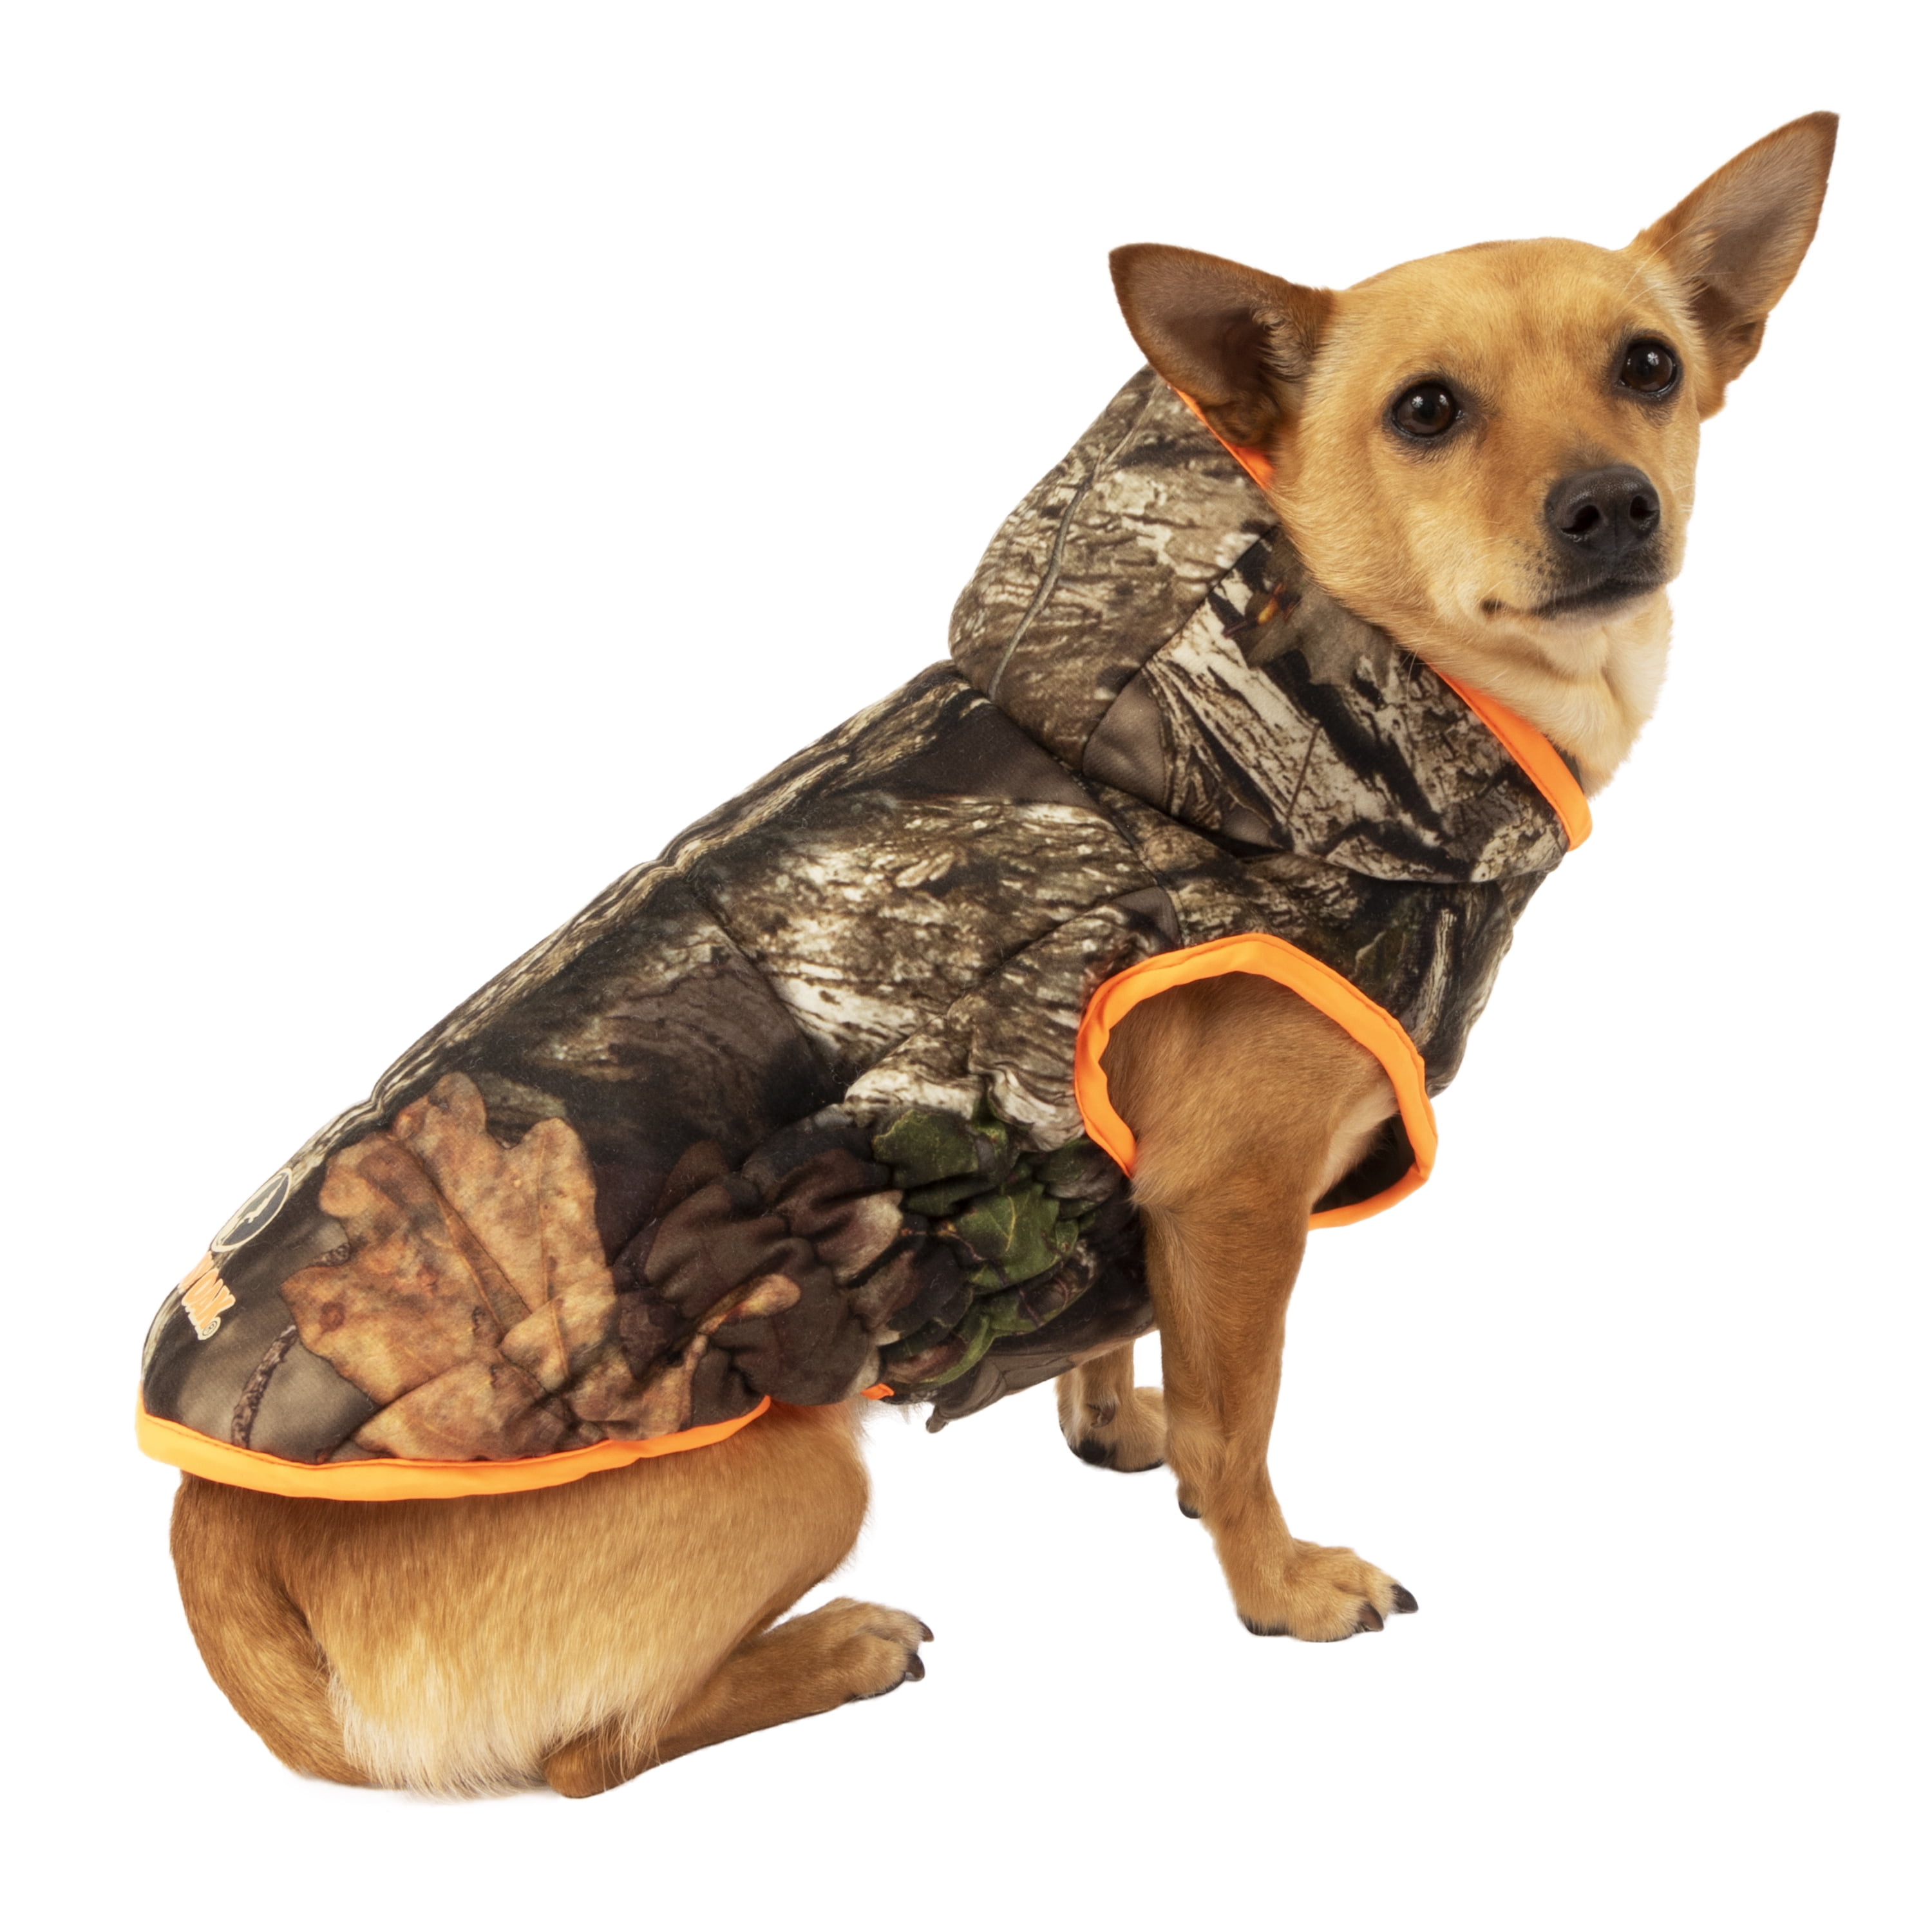 mossy oak dog jacket